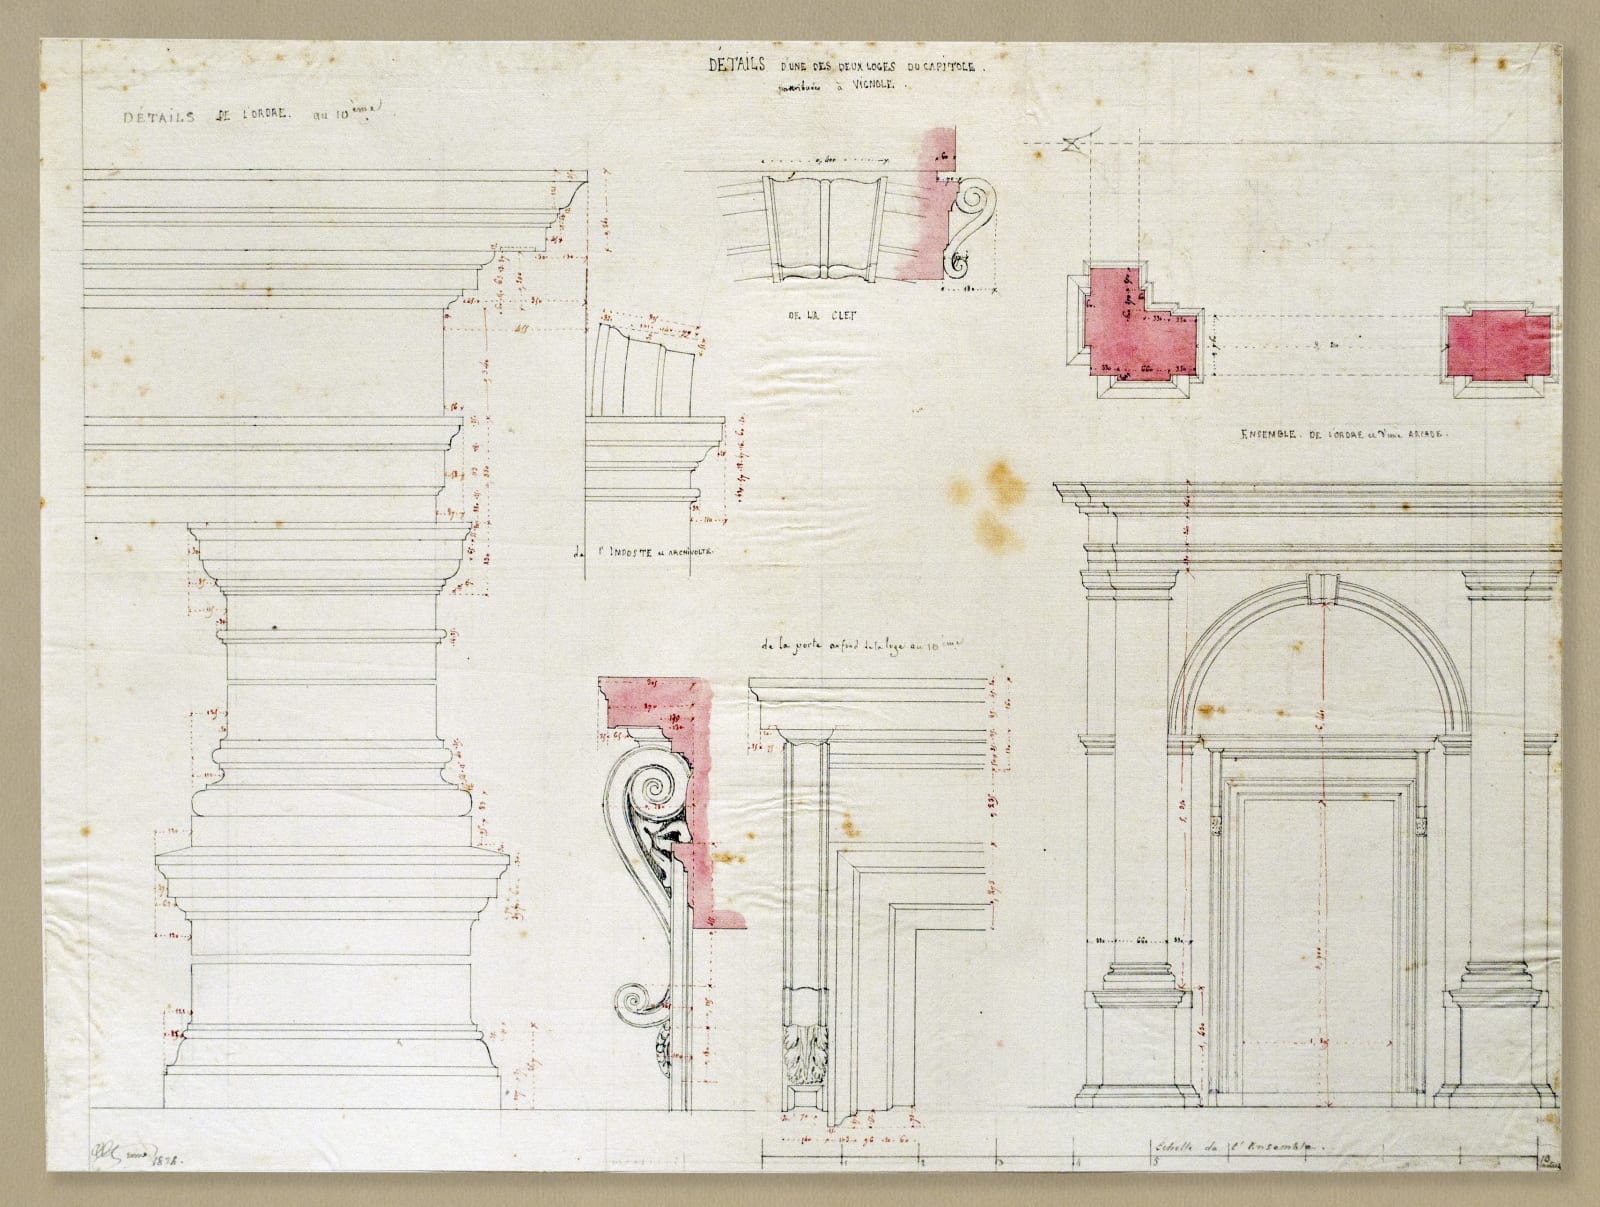 Disegni di architetture romane (1795-1877). Seconda parte